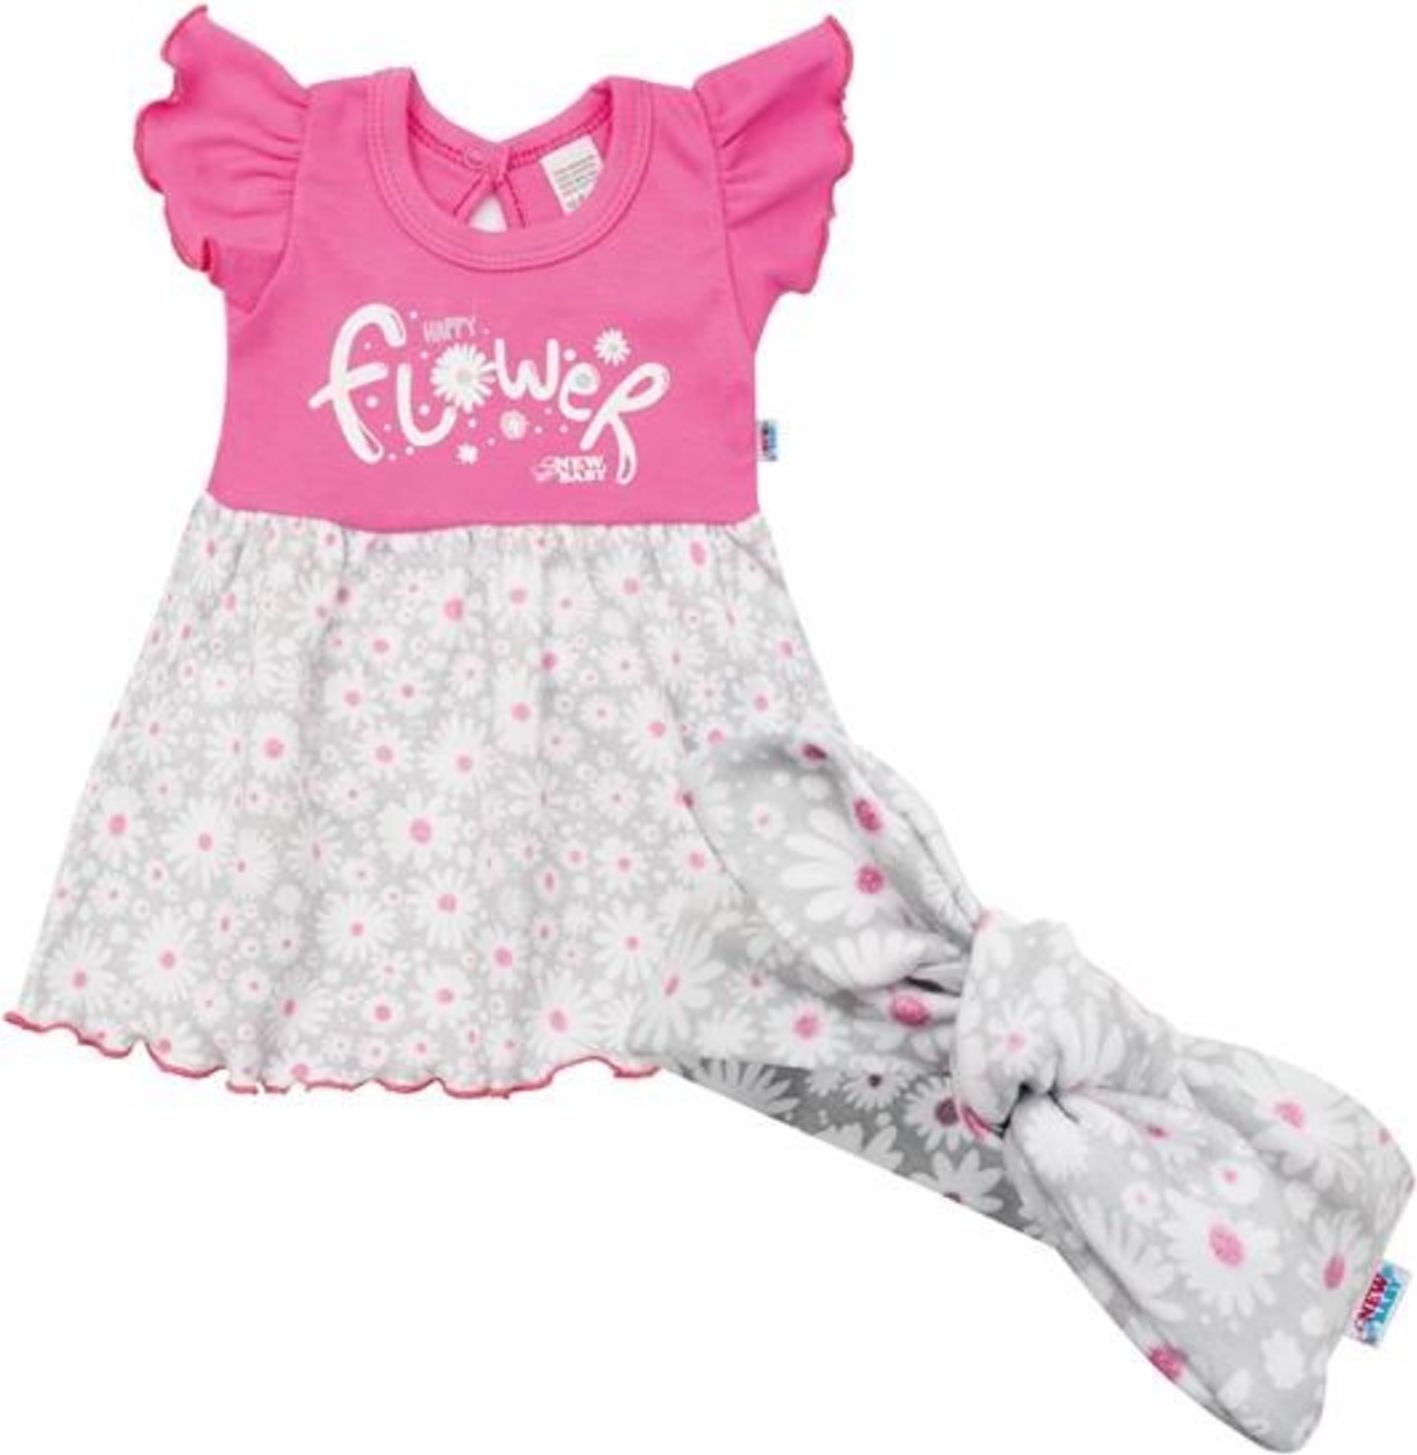 Kojenecké letní bavlněné šatičky s čelenkou New Baby Happy Flower tmavě růžové - obrázek 1